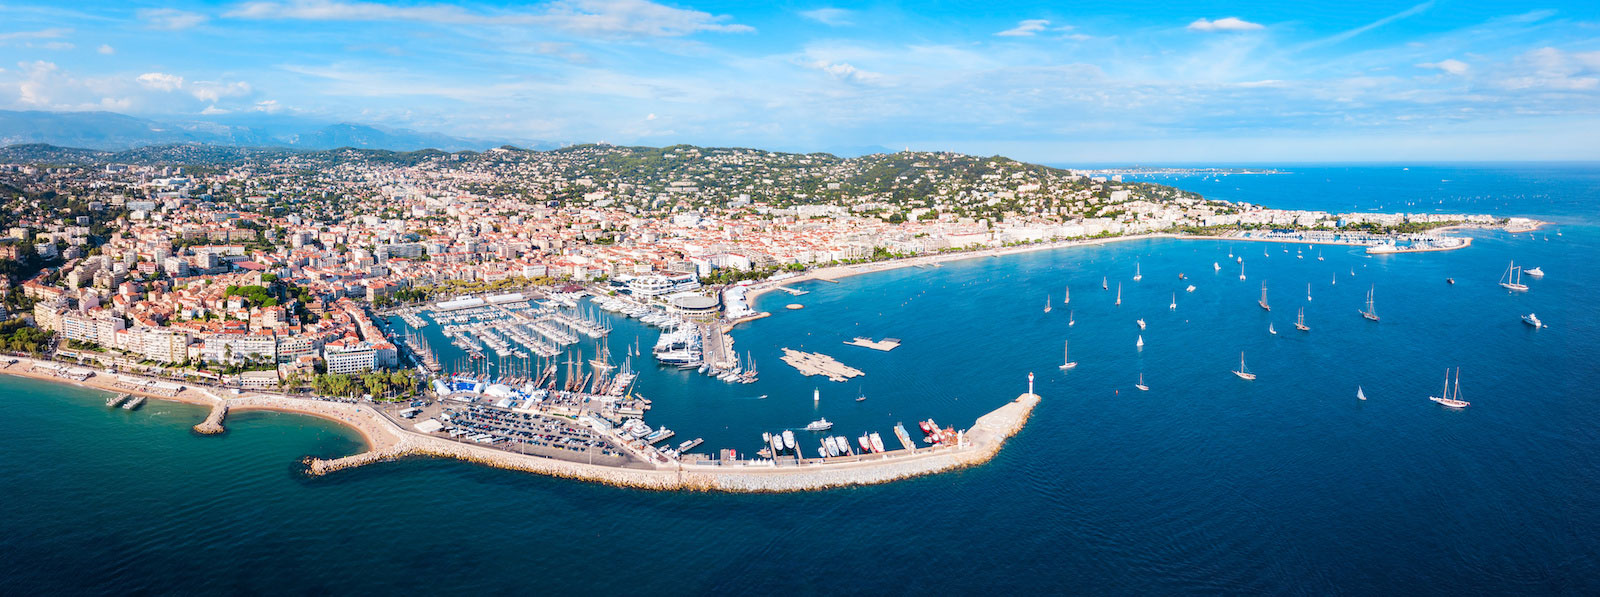 Panorama von Cannes, Frankreich